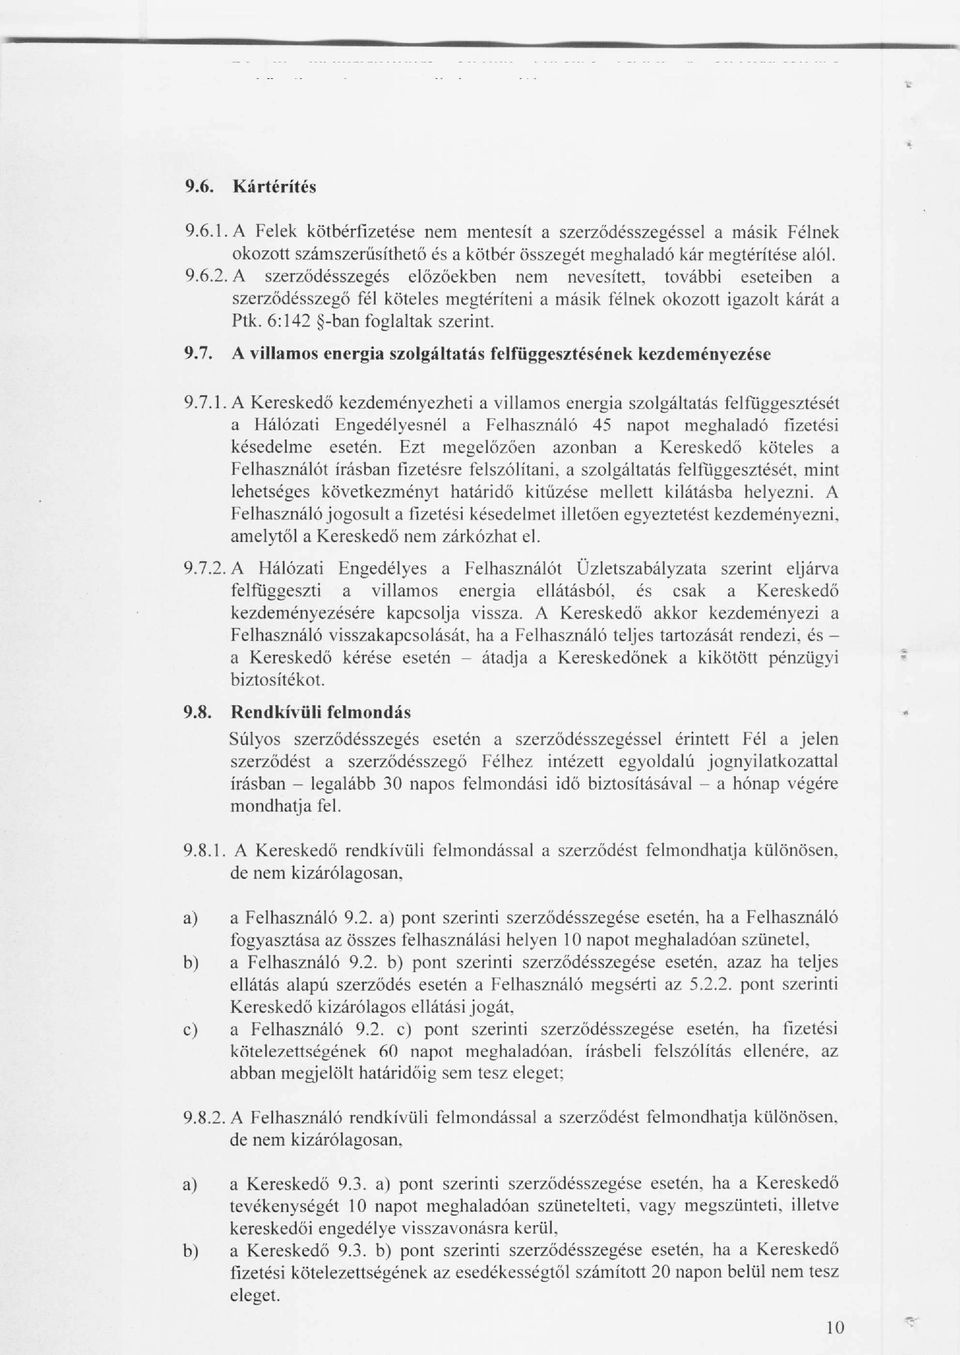 A villamos energia szolgáltatás felfüggesztésének kezdeményezése 9.7.1.